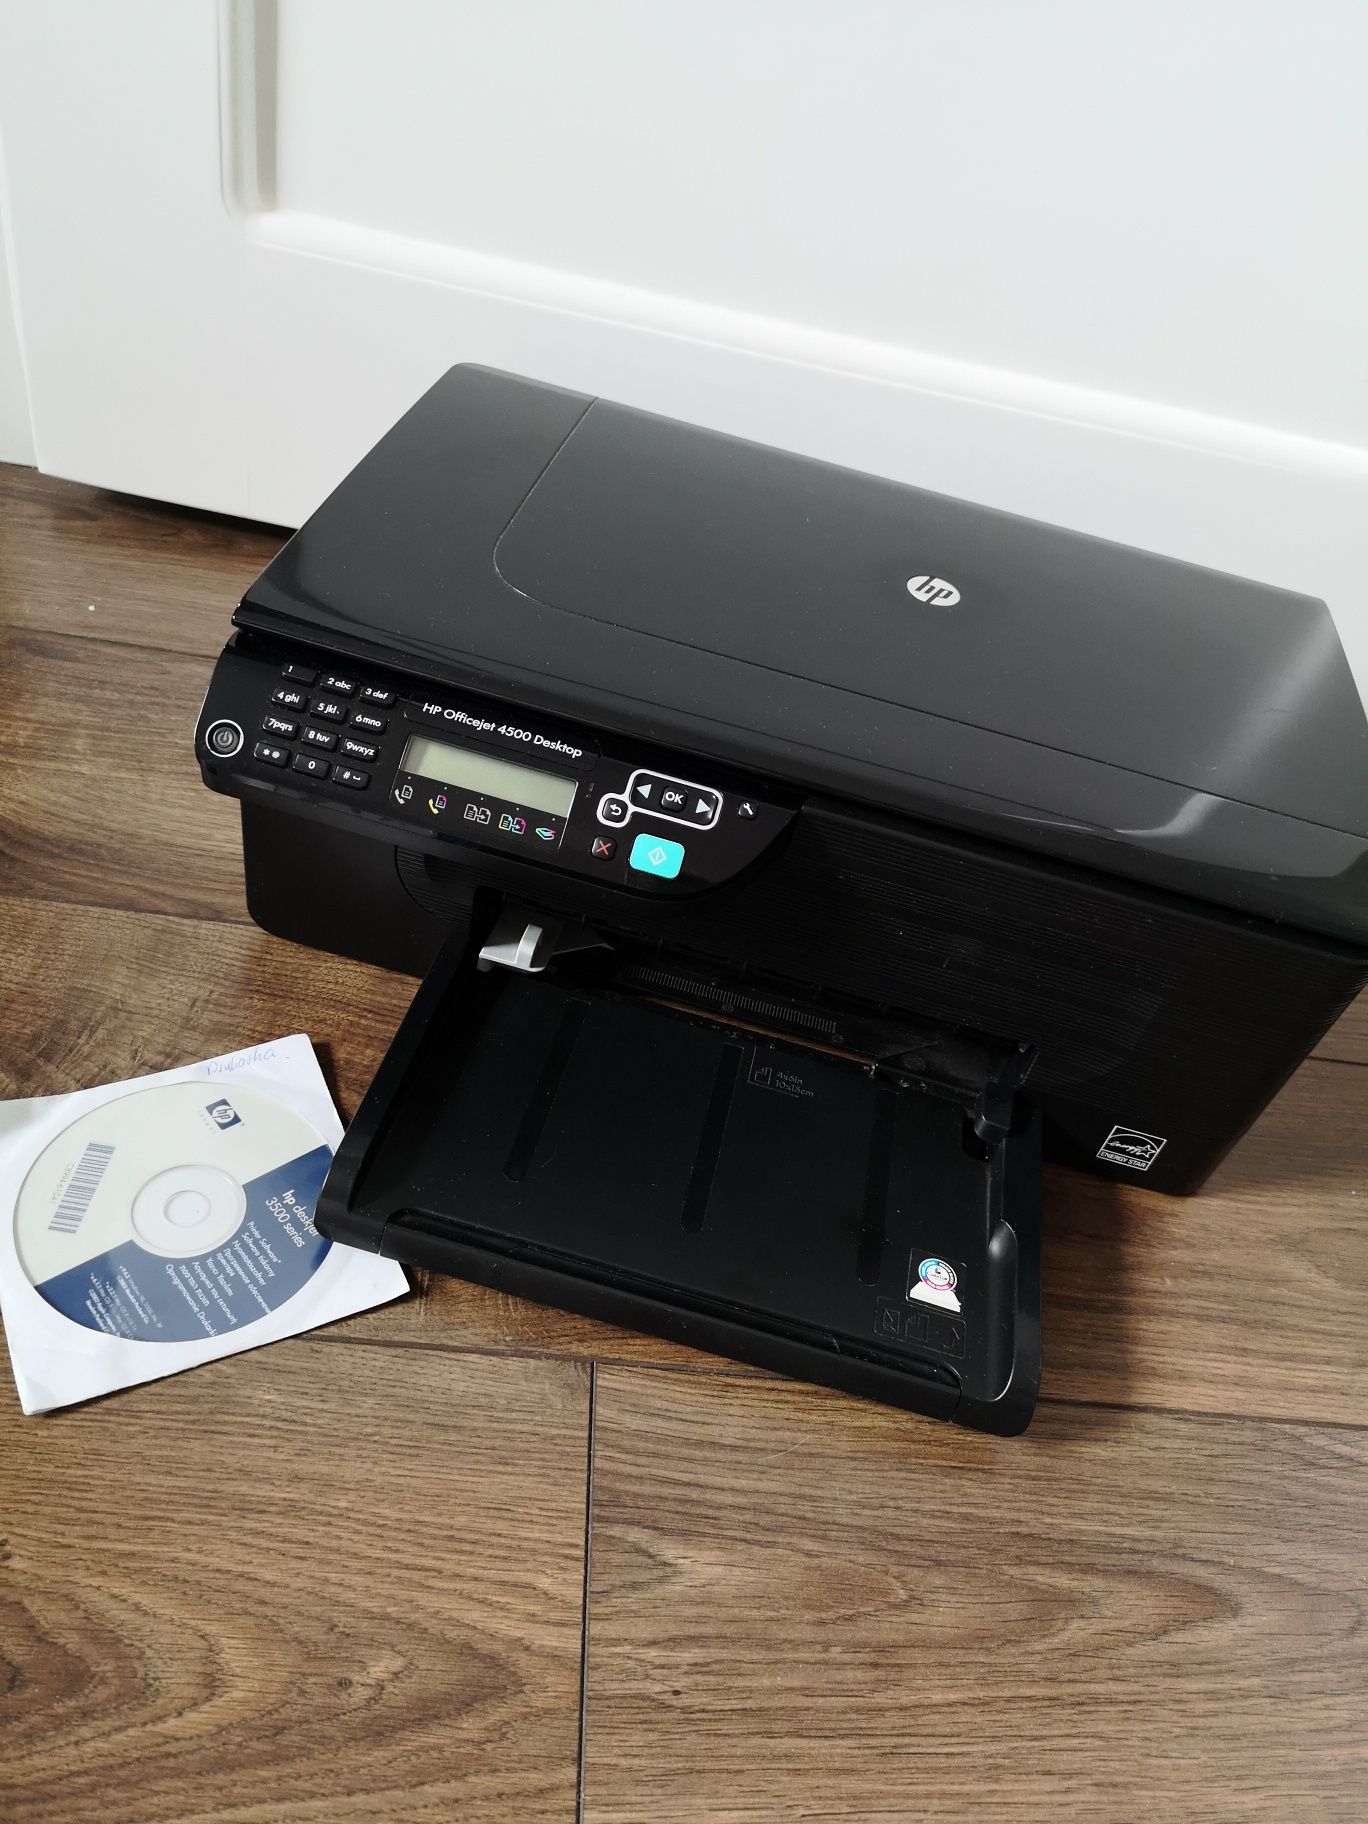 drukarka fax i skaner  hp office jet 4500 descop sprawna